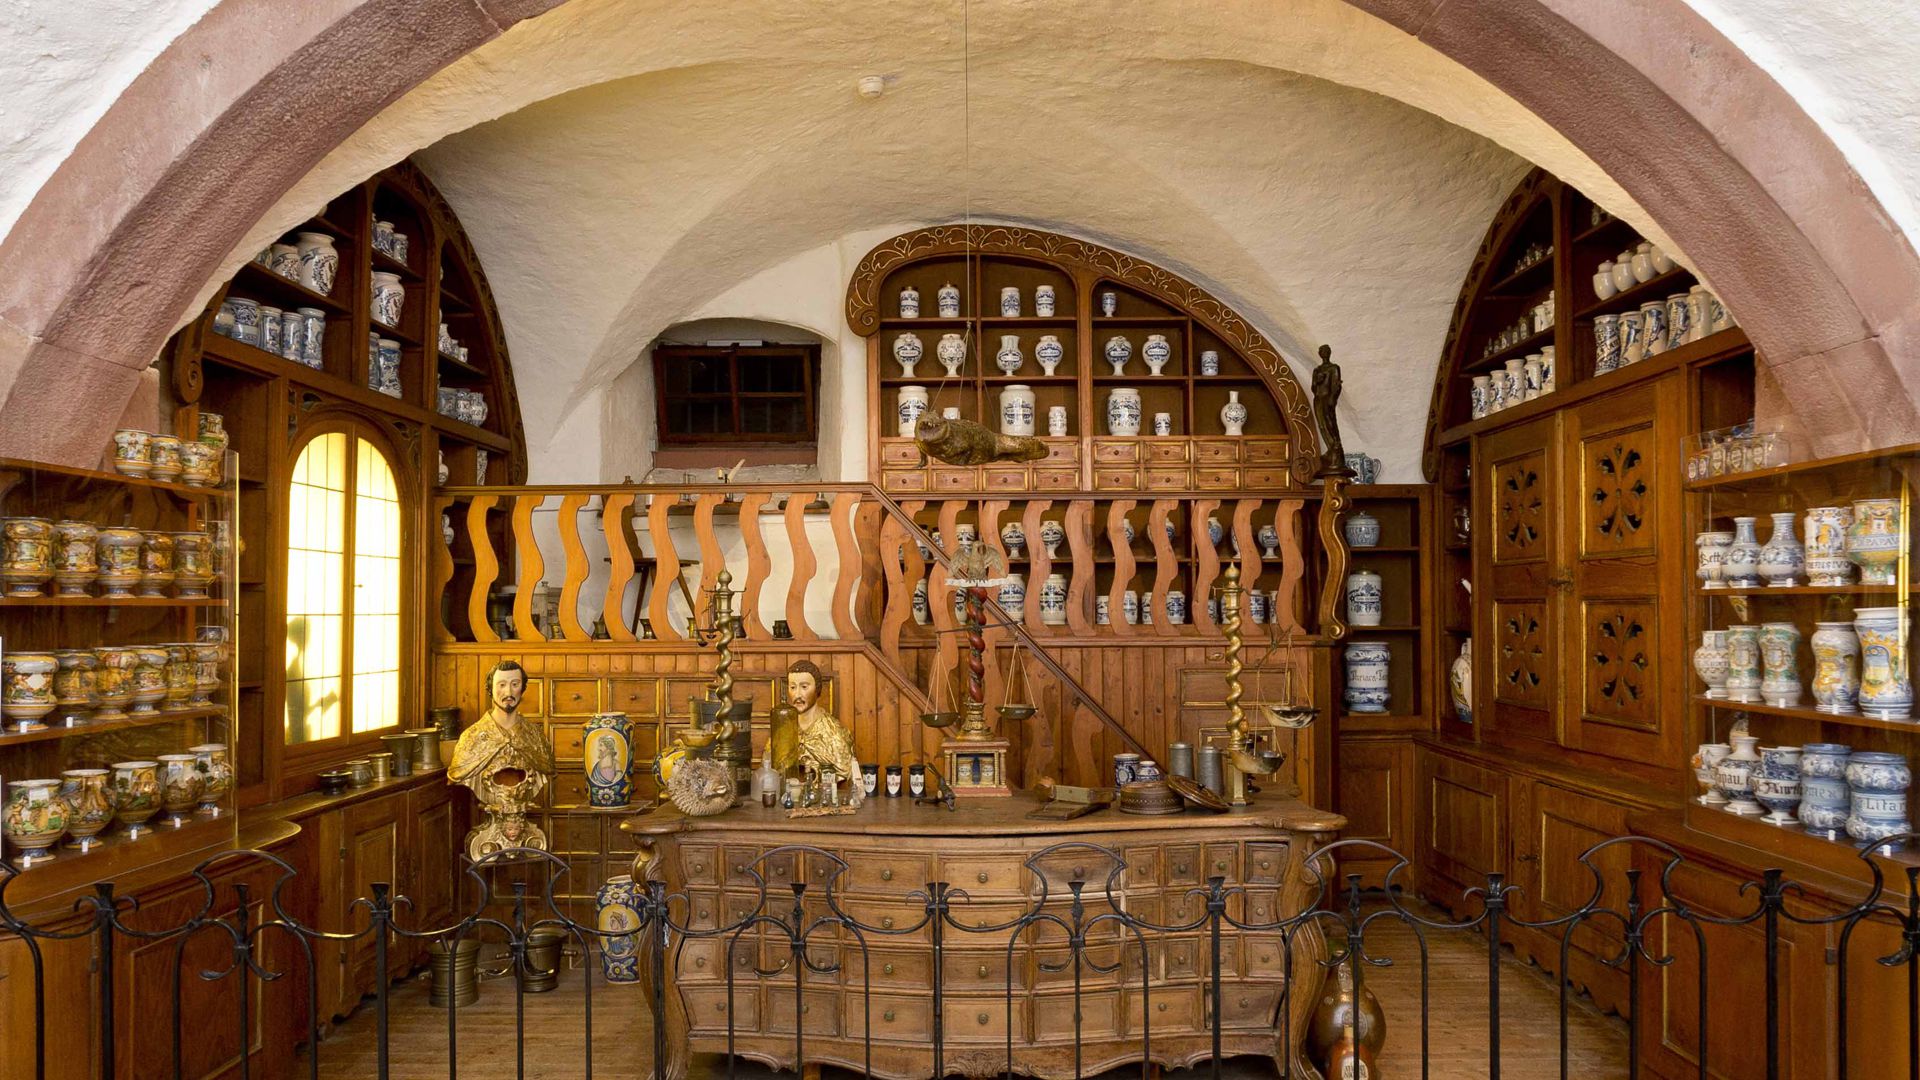 Kostbare Hölzer, edles Porzellan: Vor rund 300 Jahren richtete ein Bamberger Apotheker diese sogenannte Offizin ein, die heute in der Heidelberger Ausstellung zu sehen ist.   